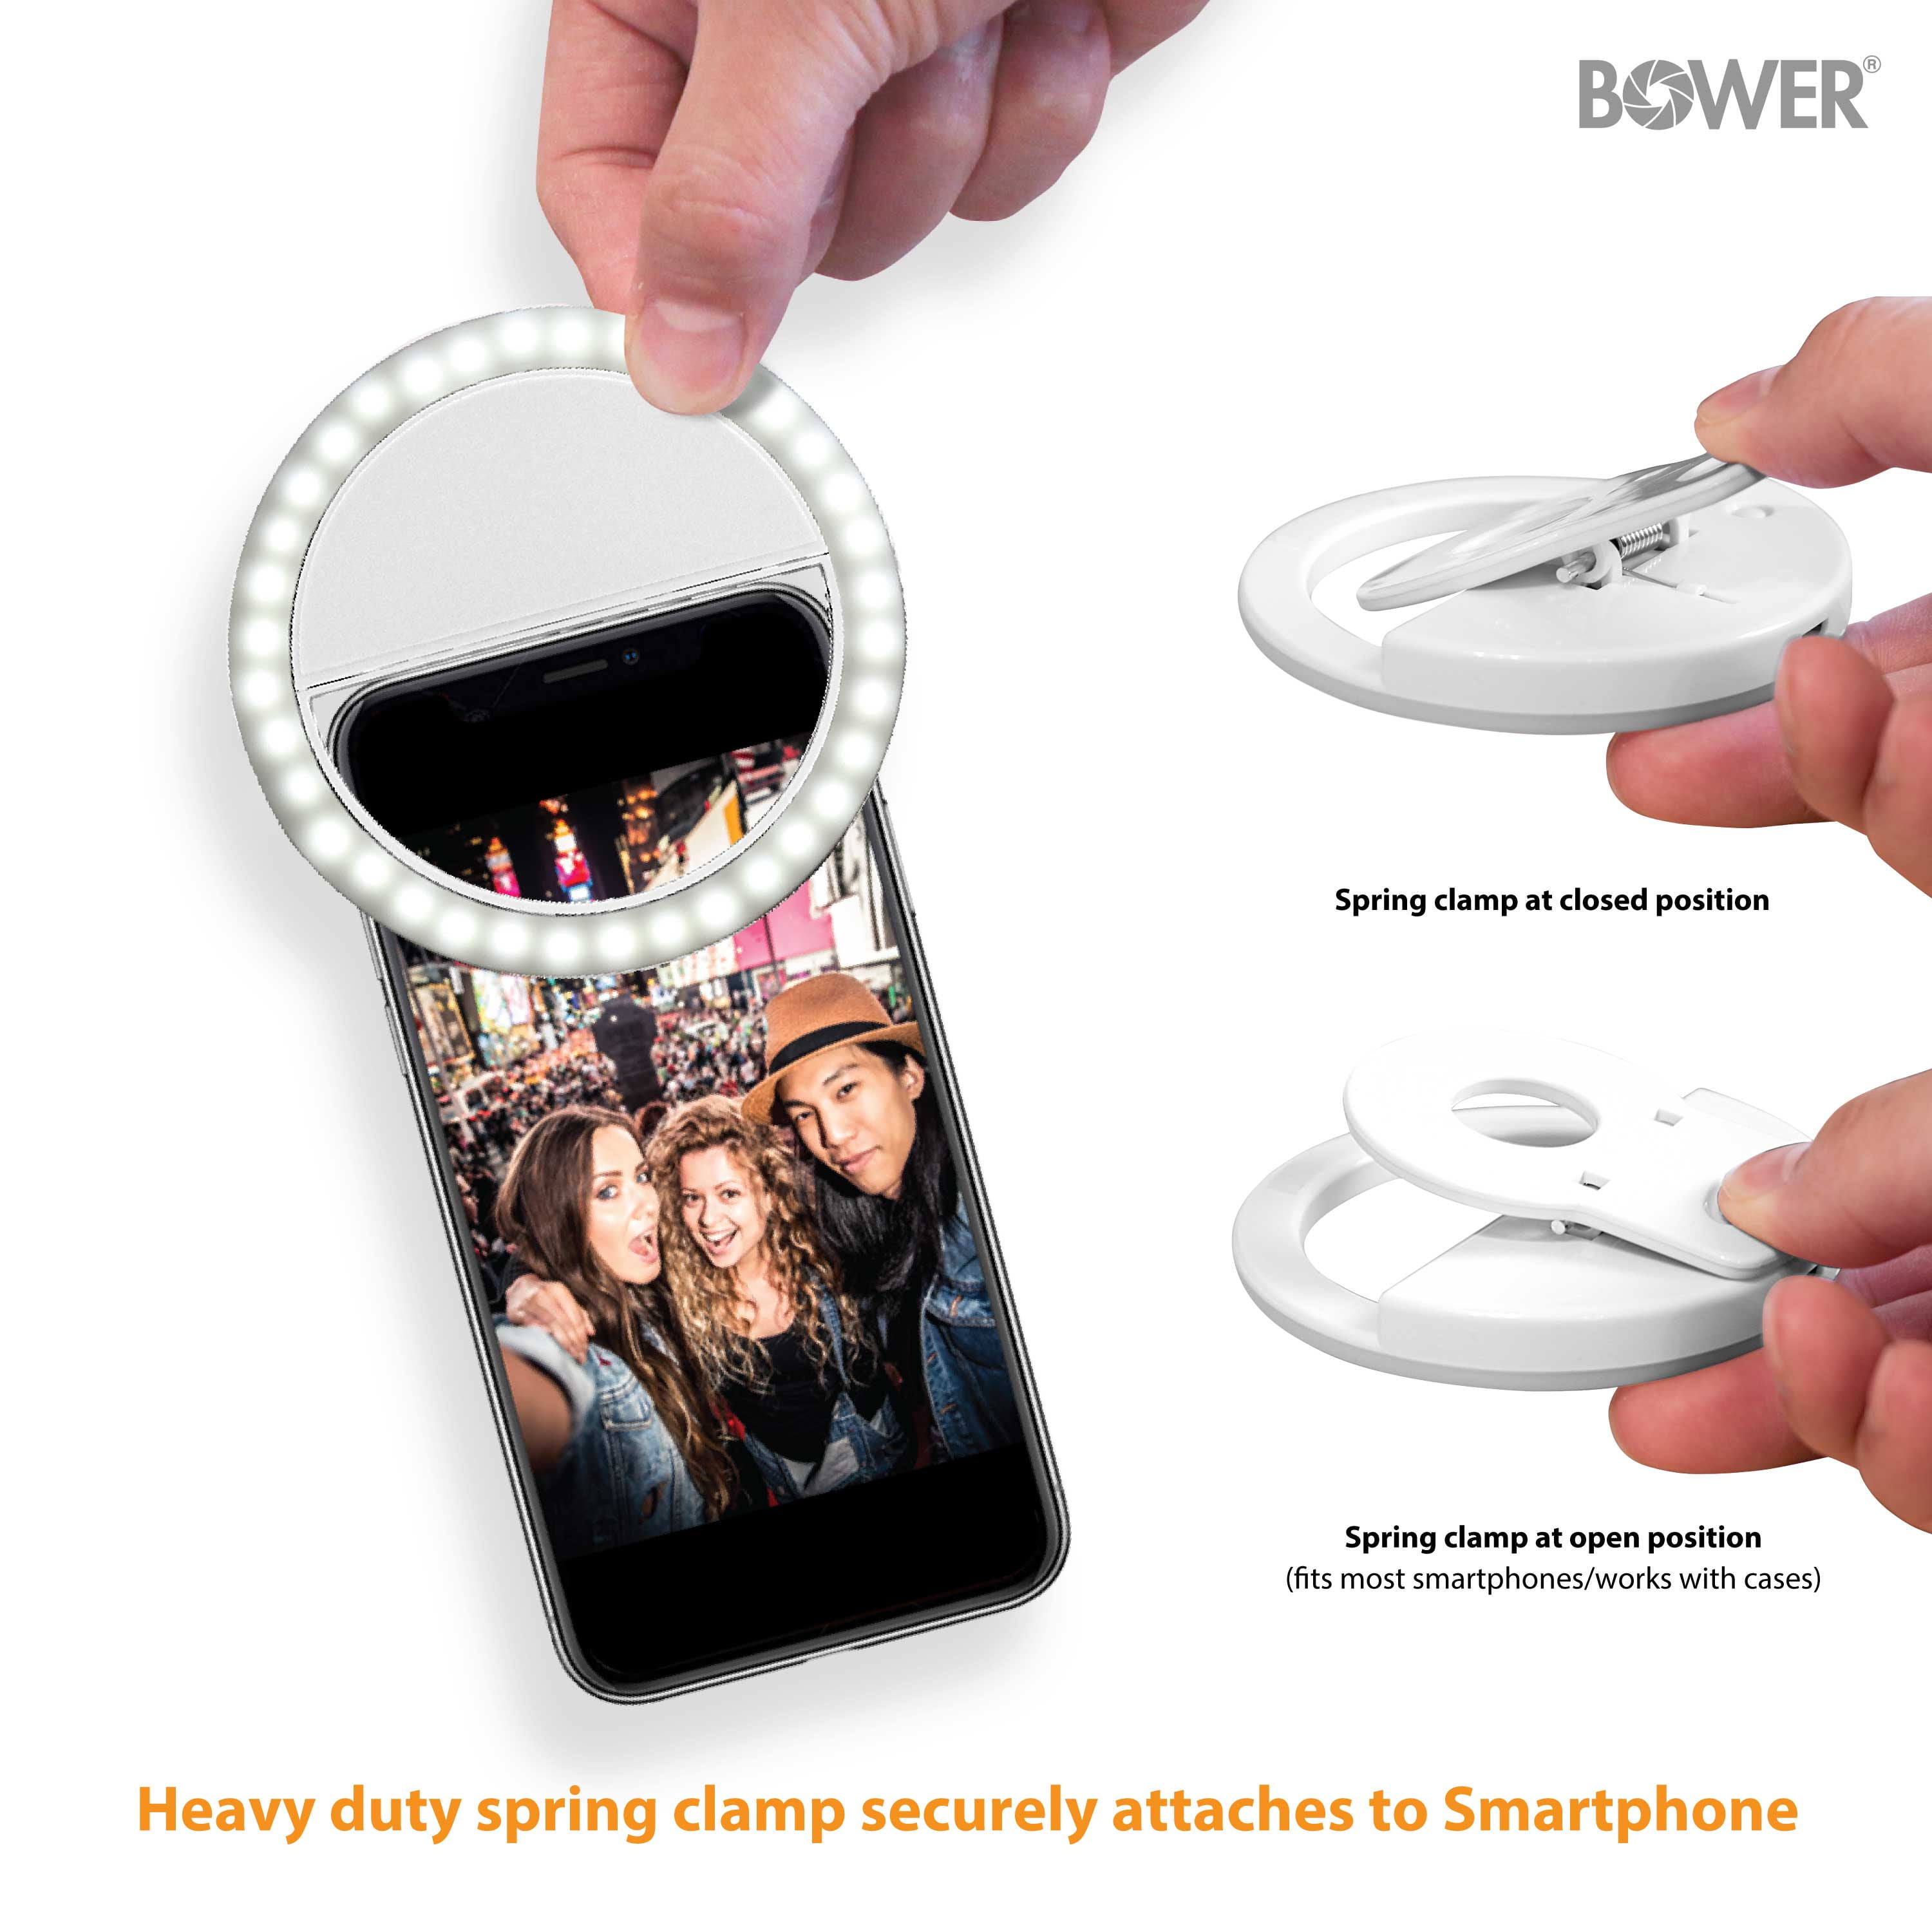 Bower Clip-On Selfie LED Ring Light